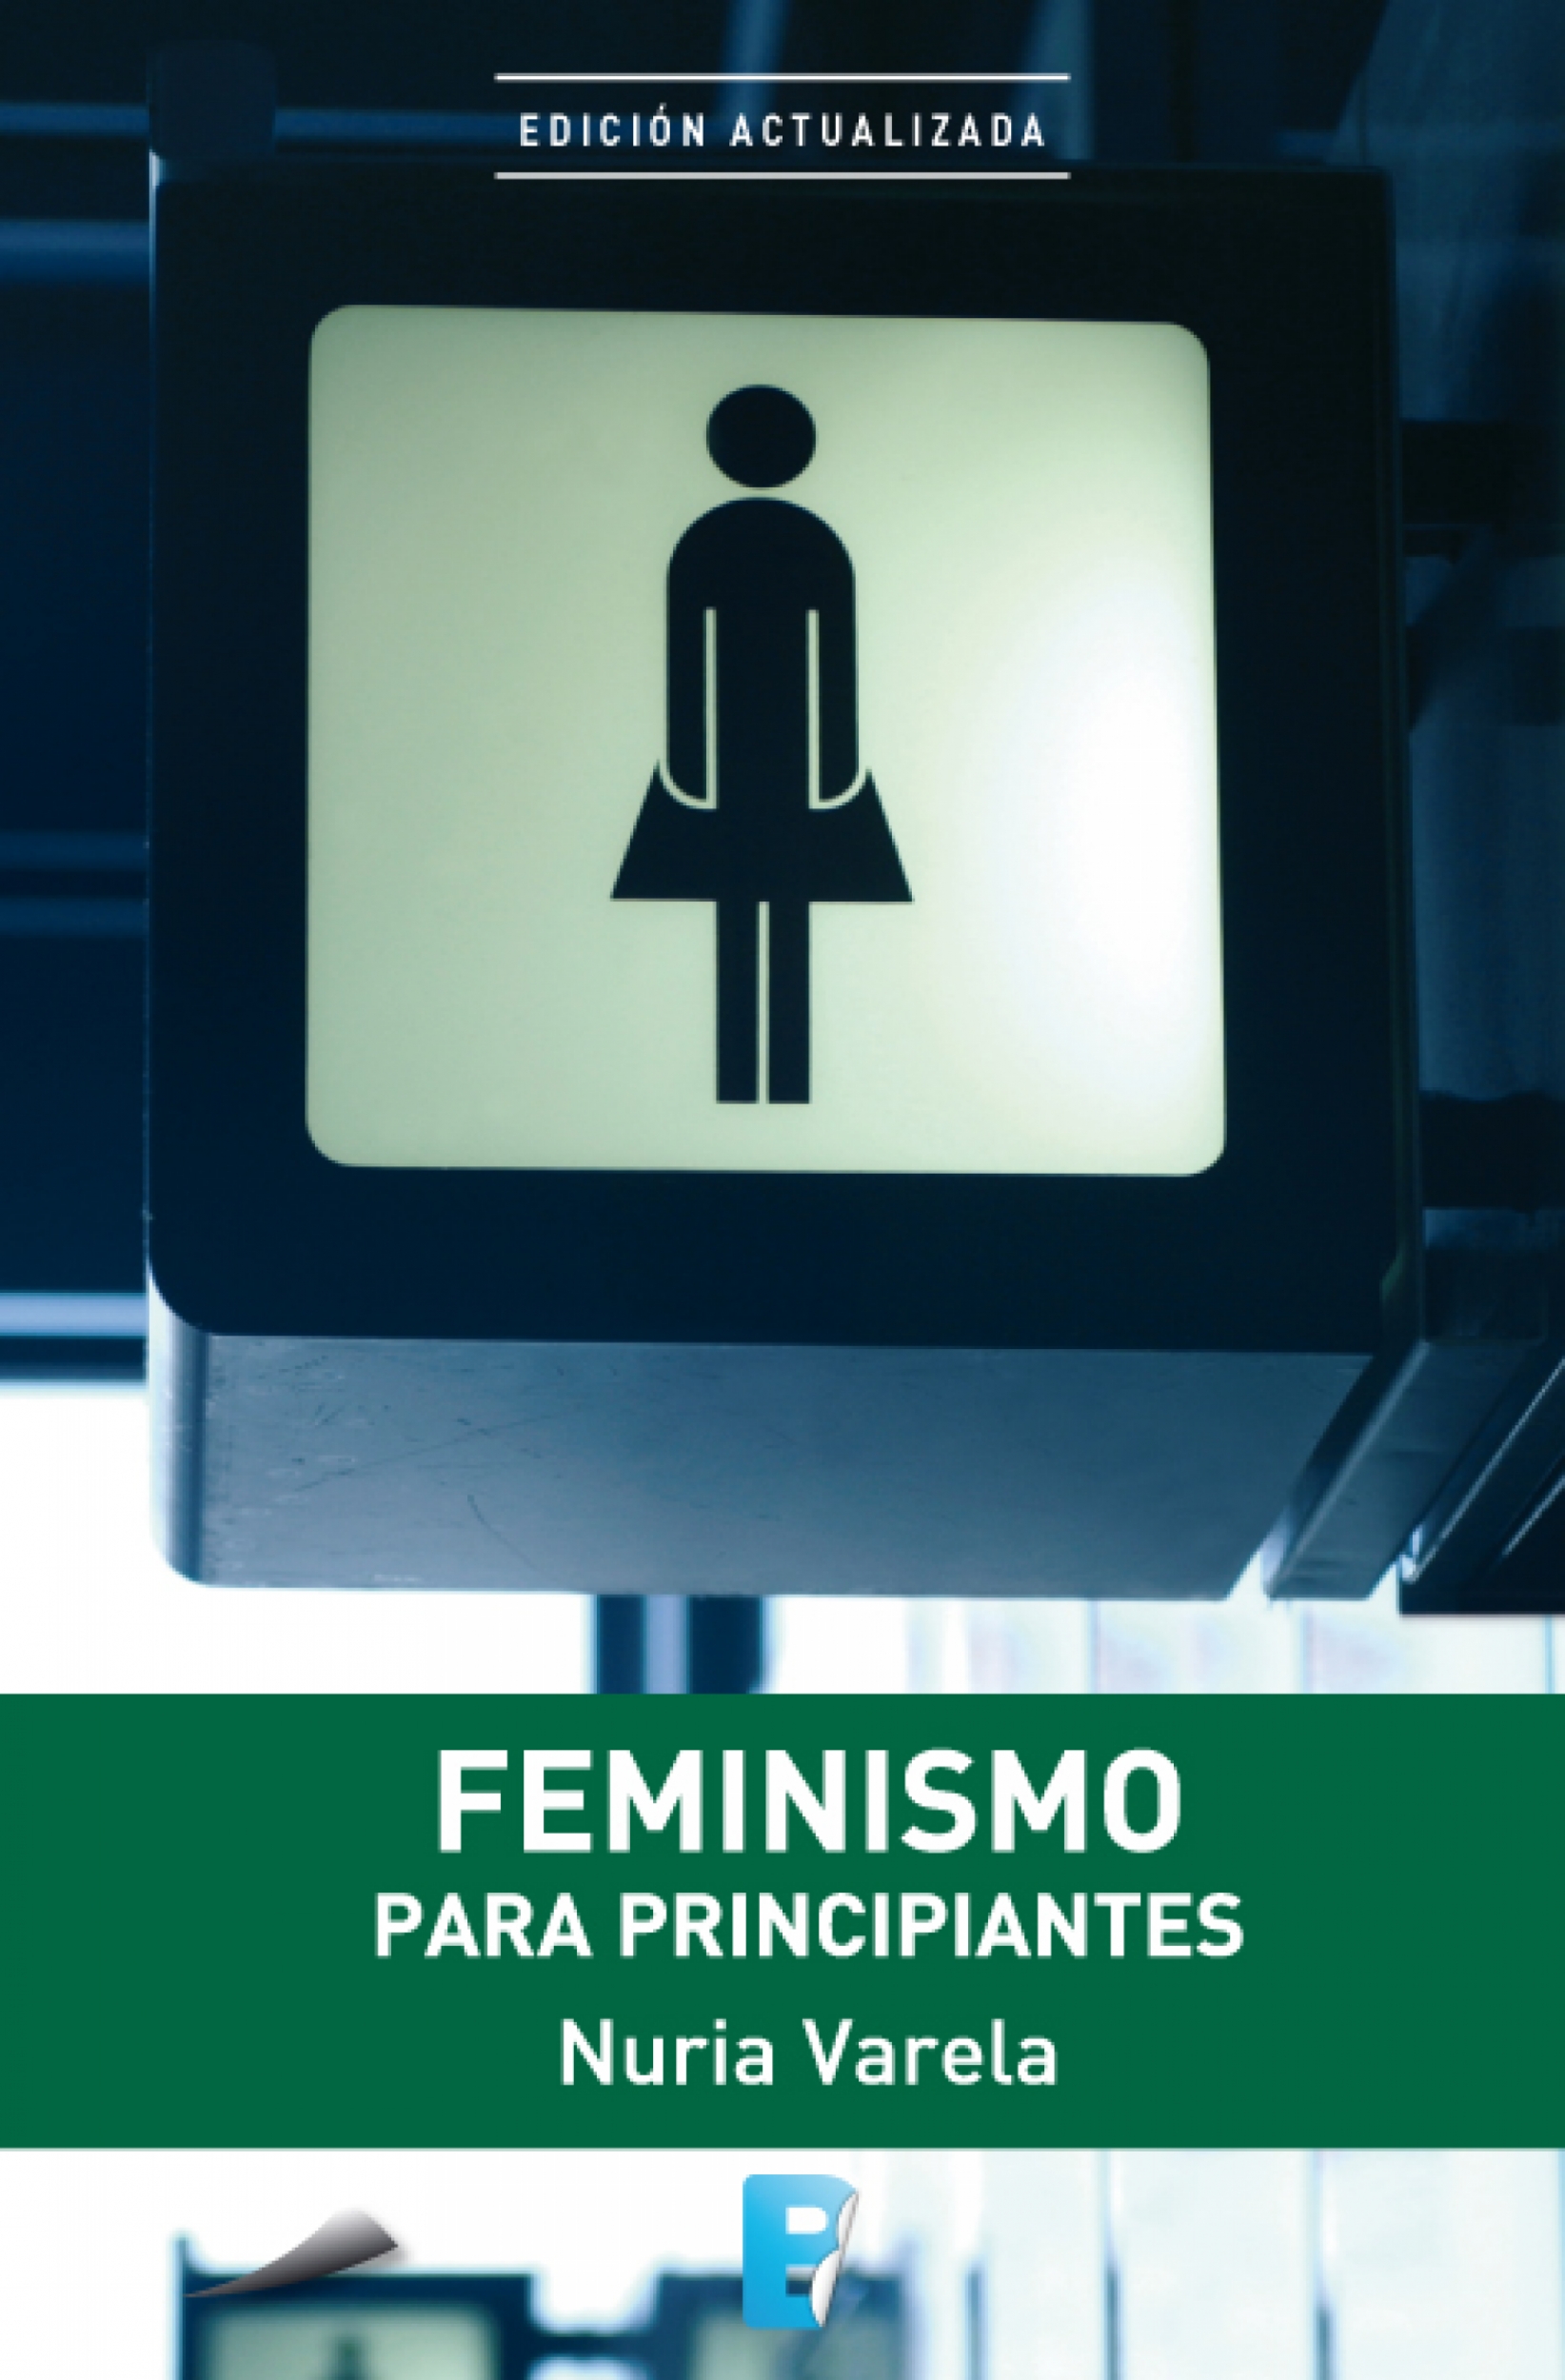 http://pontevedraviva.com/uploads/feminismo-para-principiantes.jpg